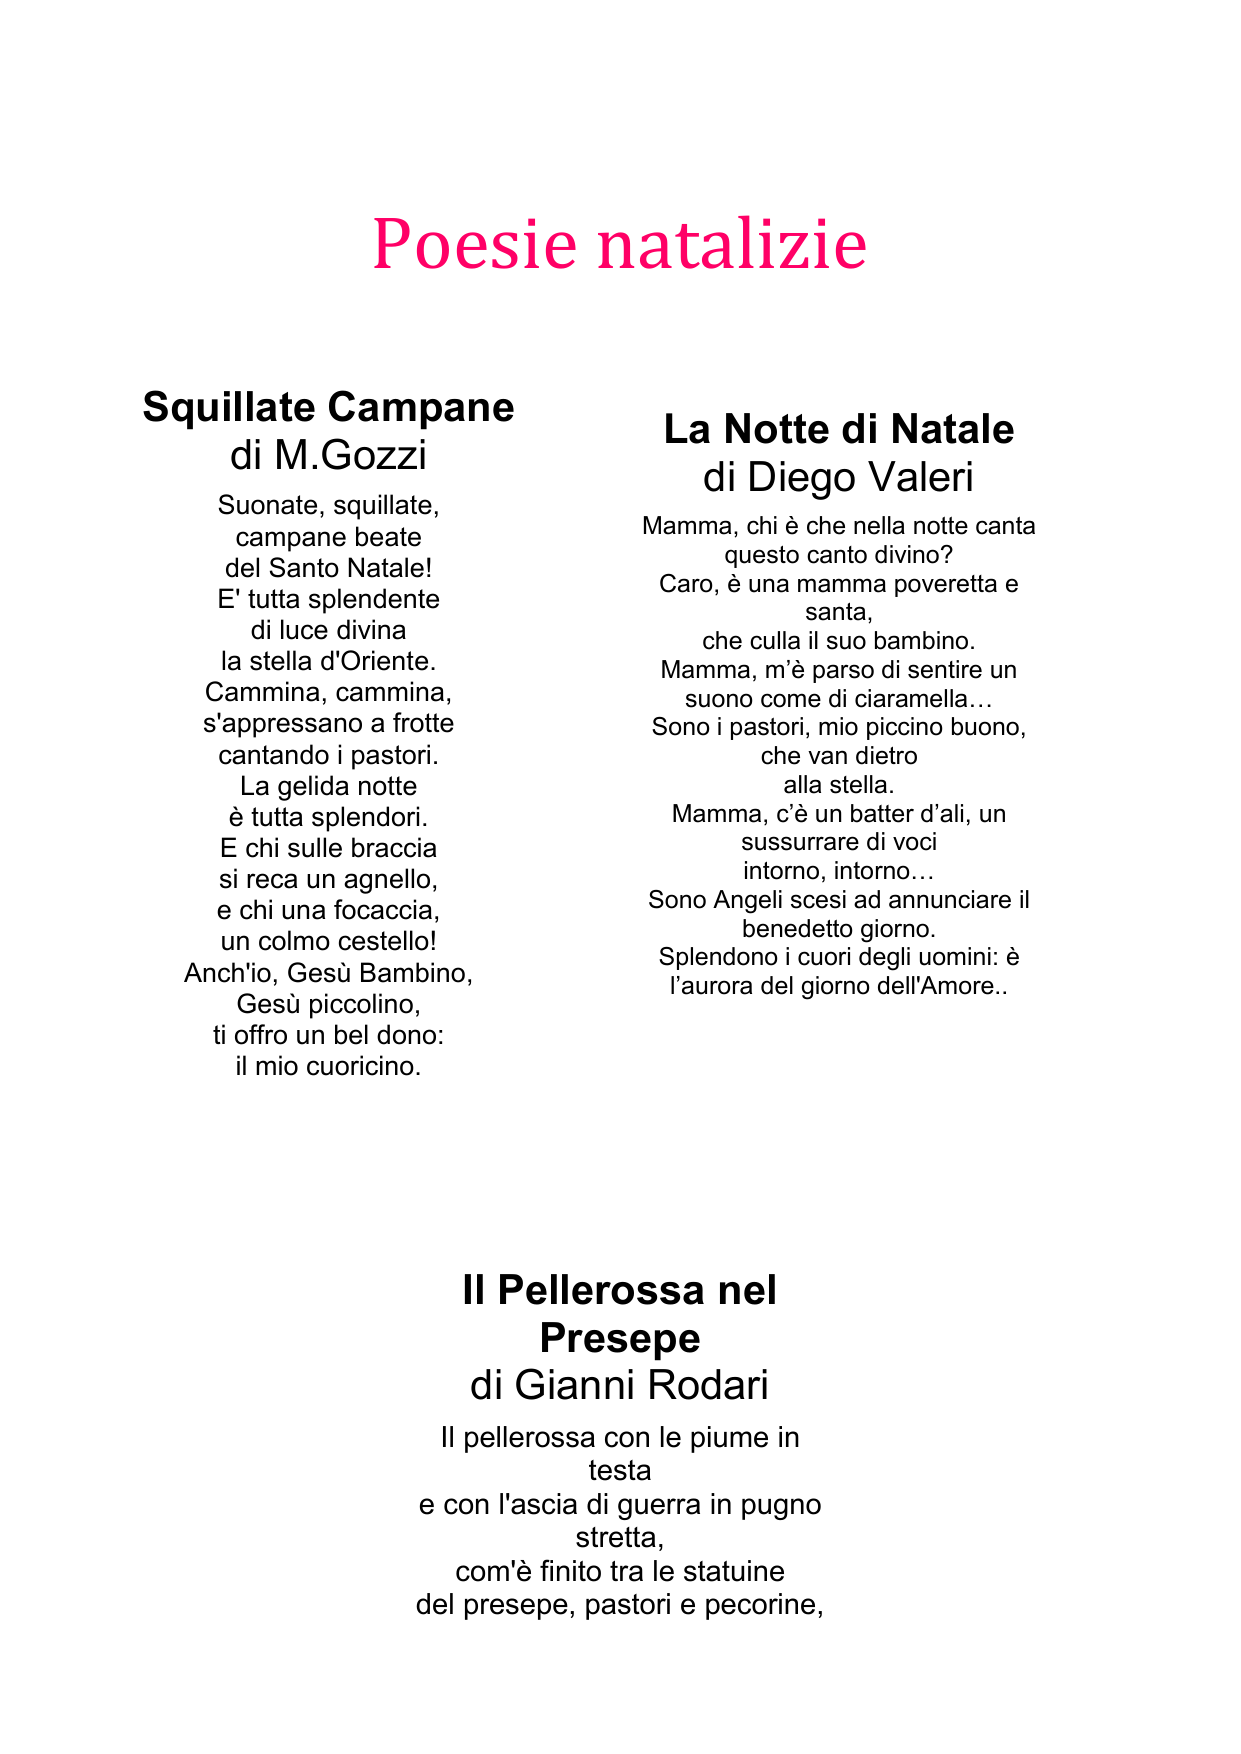 Poesia Di Natale Guido Gozzano.Poesie Di Natale Famose 1